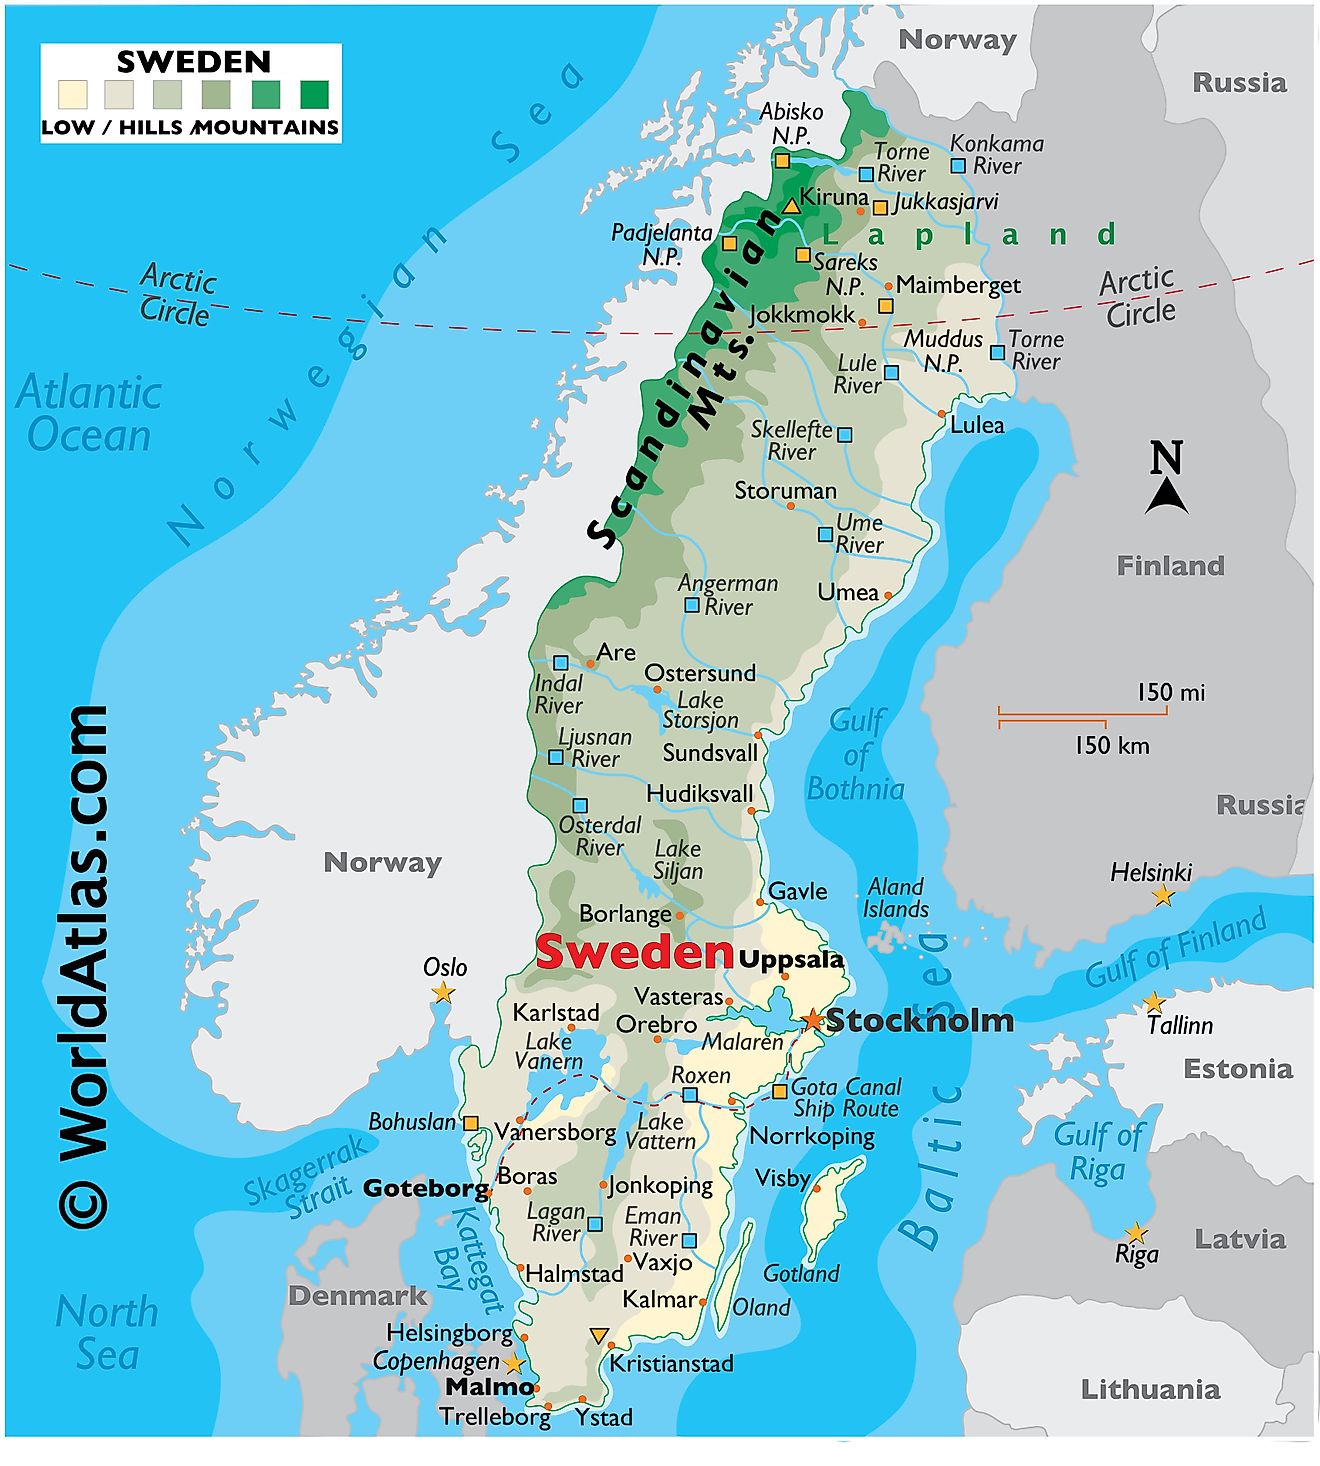 Mapa físico de Suecia que muestra su relieve, límites estatales, montañas, puntos extremos, lagos principales, ríos, ciudades importantes, etc.